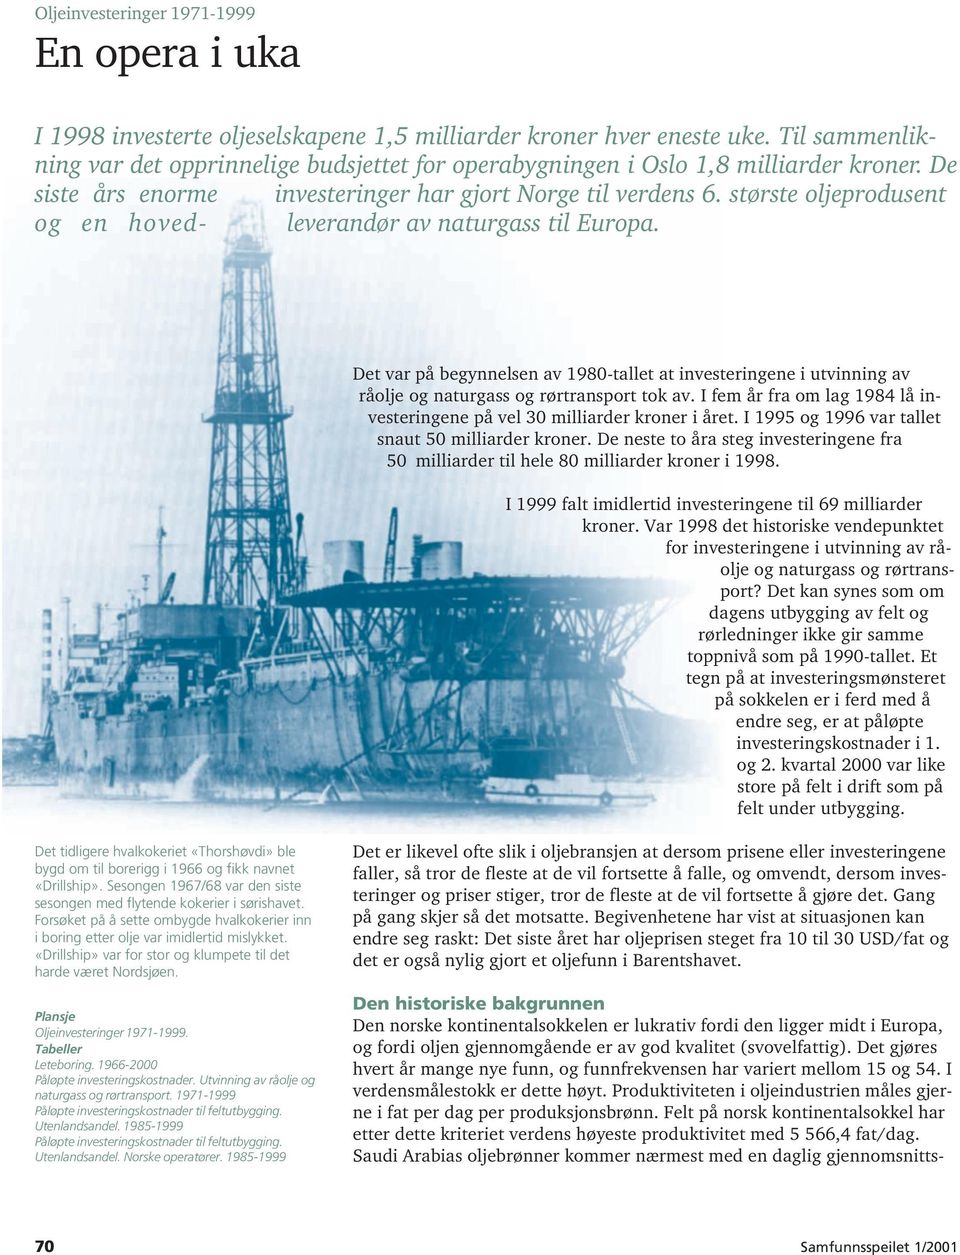 største oljeprodusent og en hoved- leverandør av naturgass til Europa. Det var på begynnelsen av 1980-tallet at investeringene i utvinning av råolje og naturgass og rørtransport tok av.